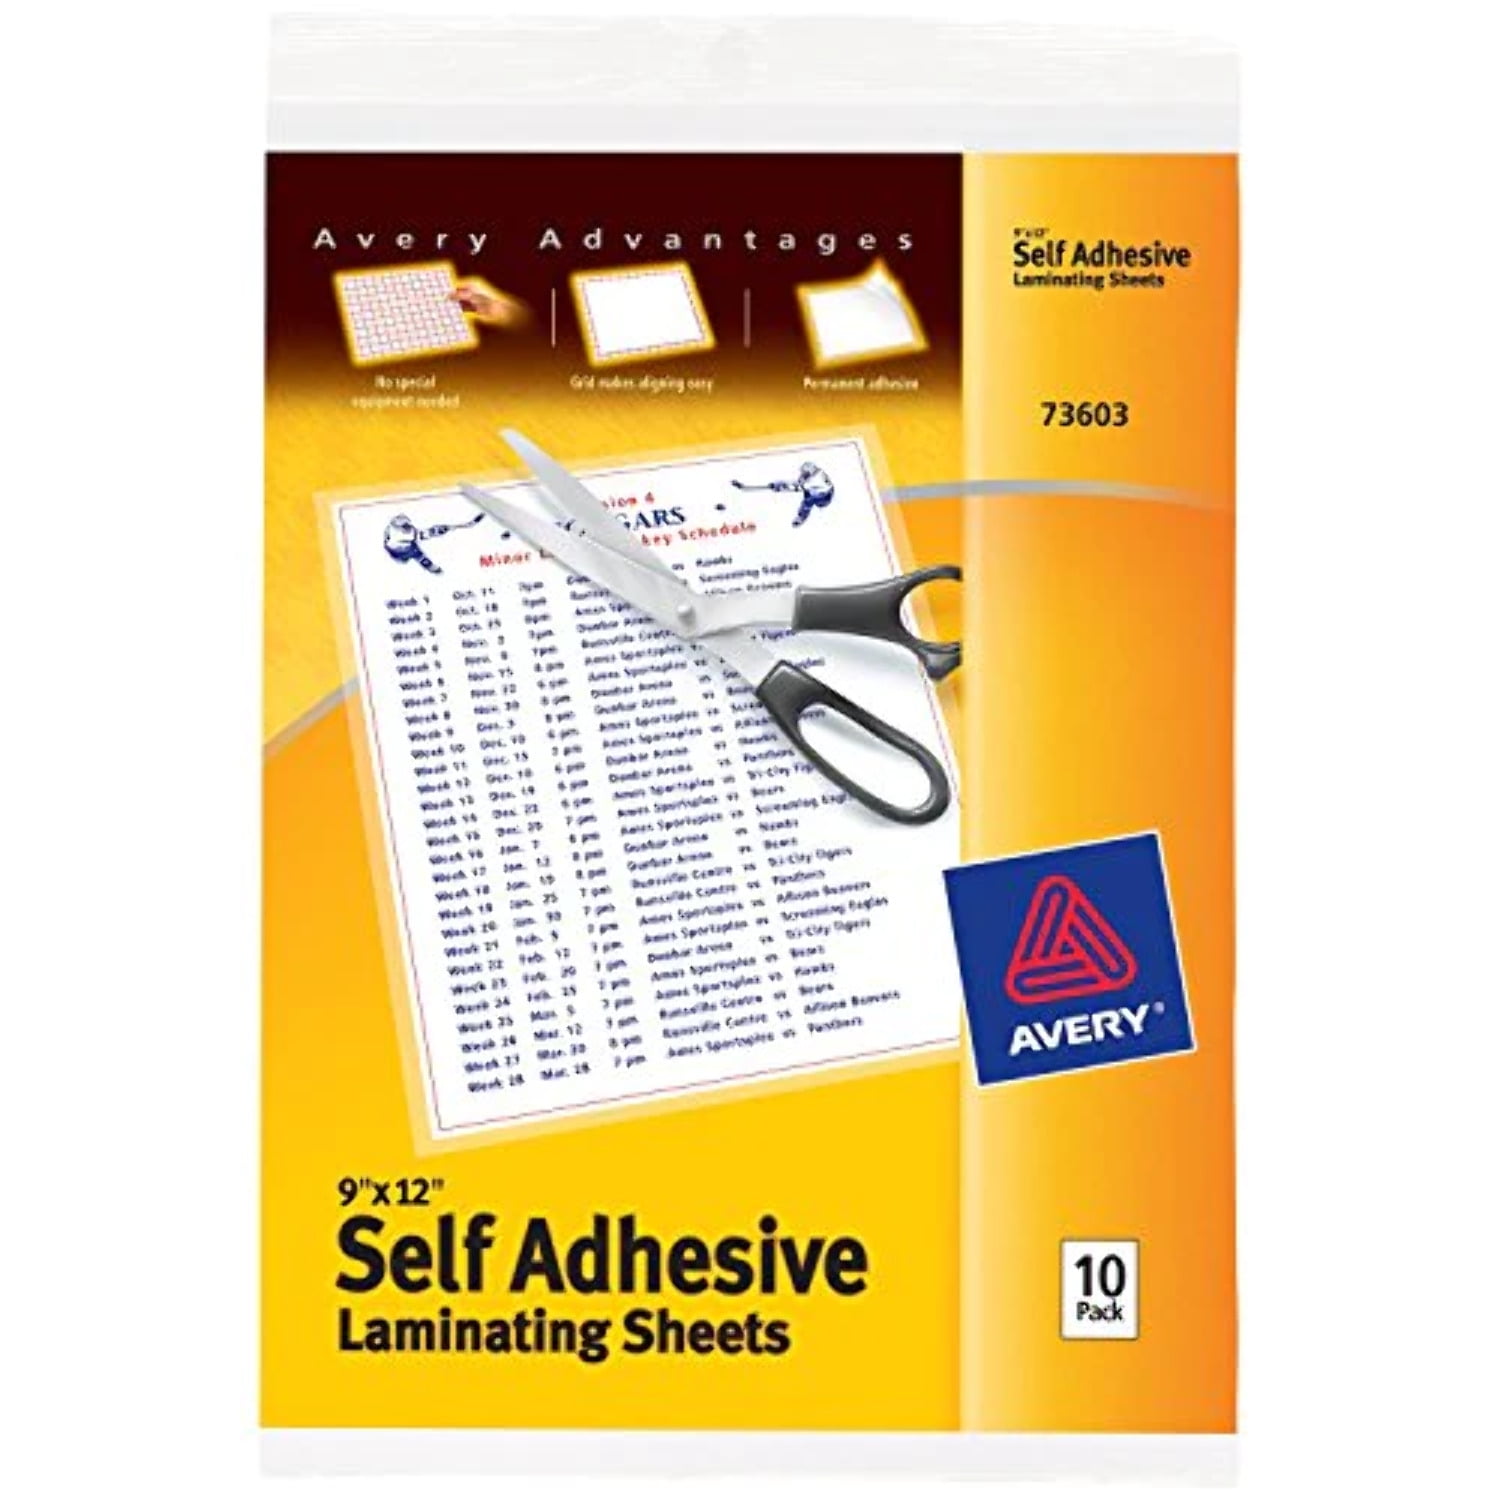 Demo Video: Avery Self-Adhesive Laminating Sheets, 73601, 73603